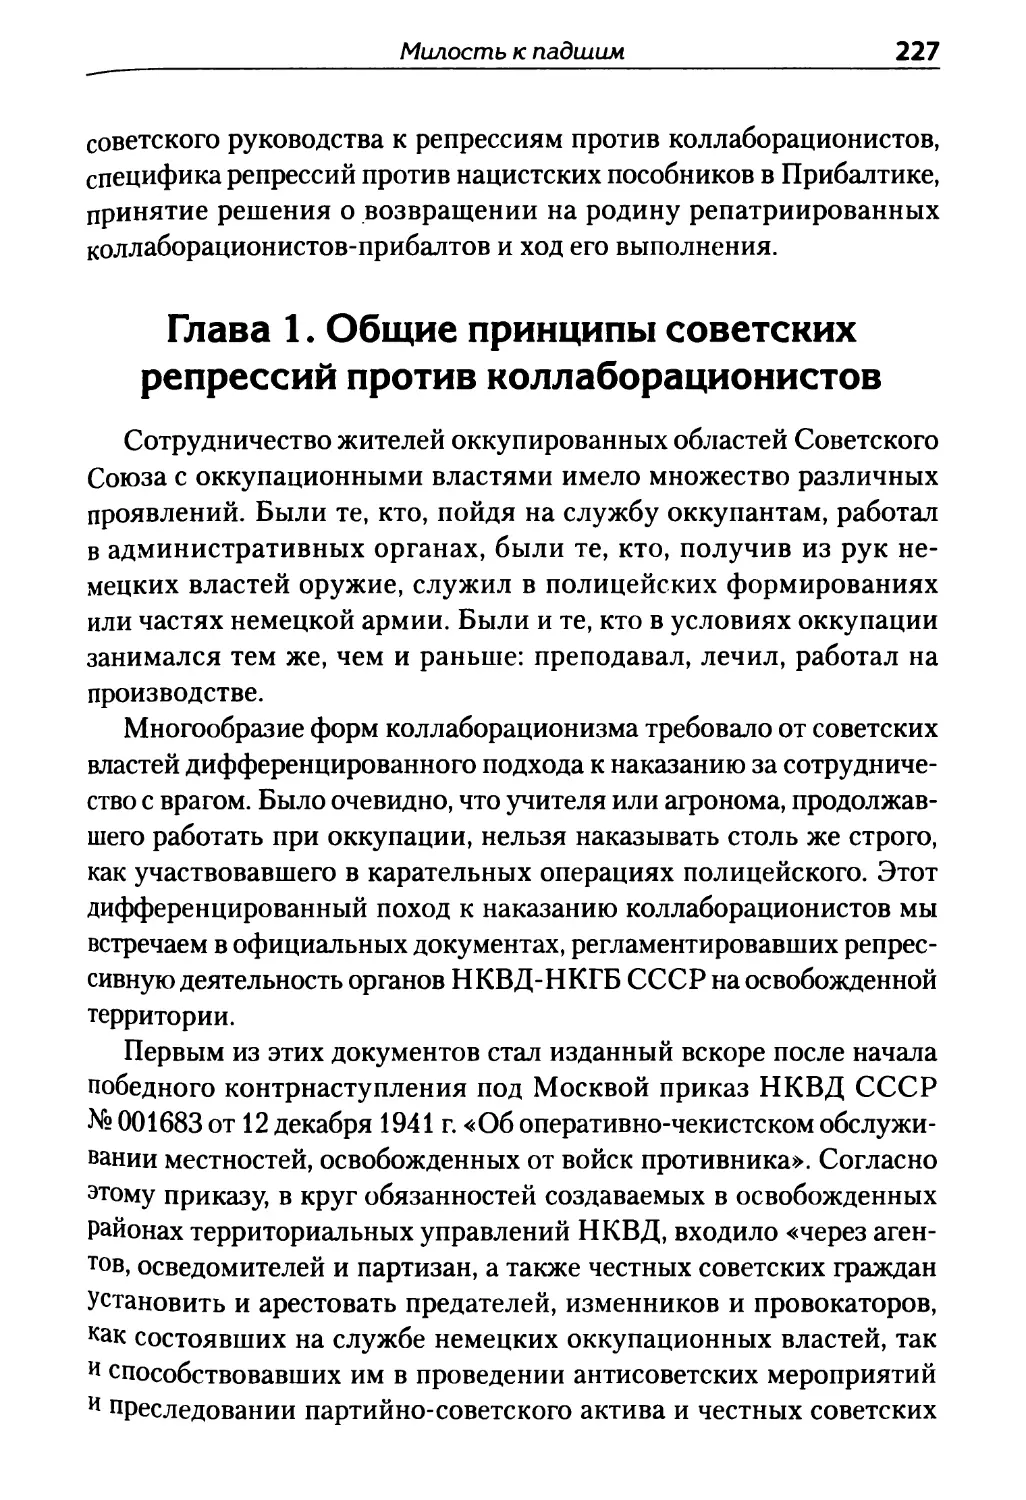 Глава 1. Общие принципы советских репрессий против коллаборационистов